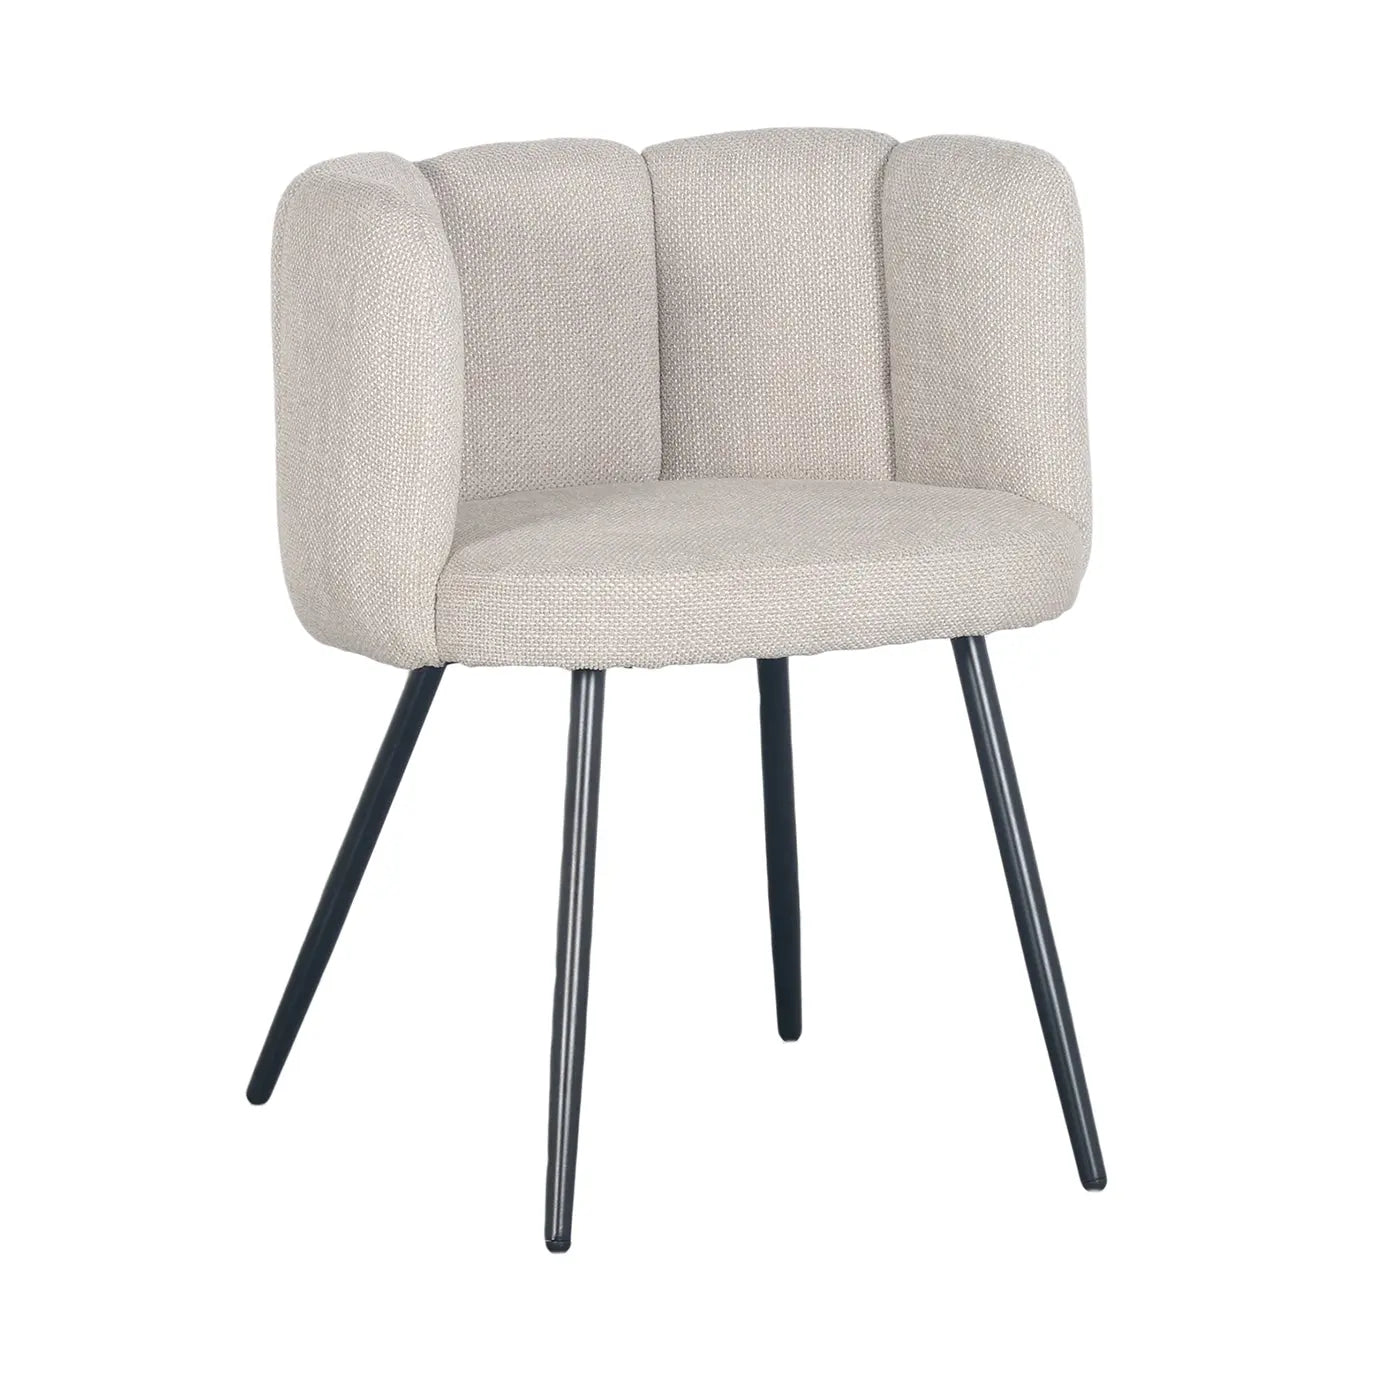 PE Cosmetics High Five chair - Beige Velvet - eetkamer stoelen / wachtkamer stoelen (Different Colors) 2 Stuks